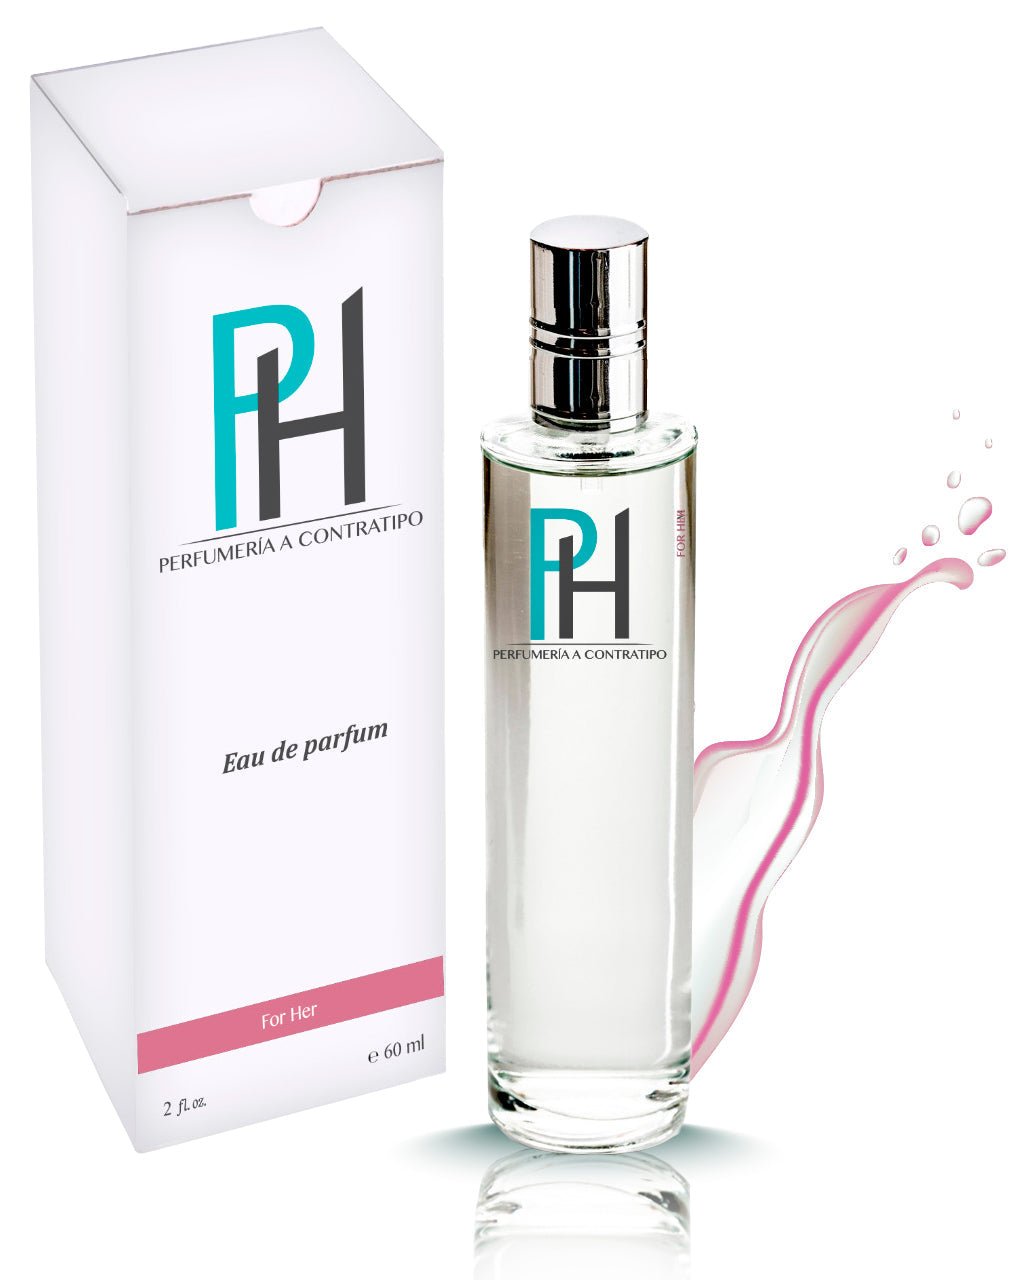 Perfume Can Can Burlesque De 60 ml - PH Perfumería a Contratipo